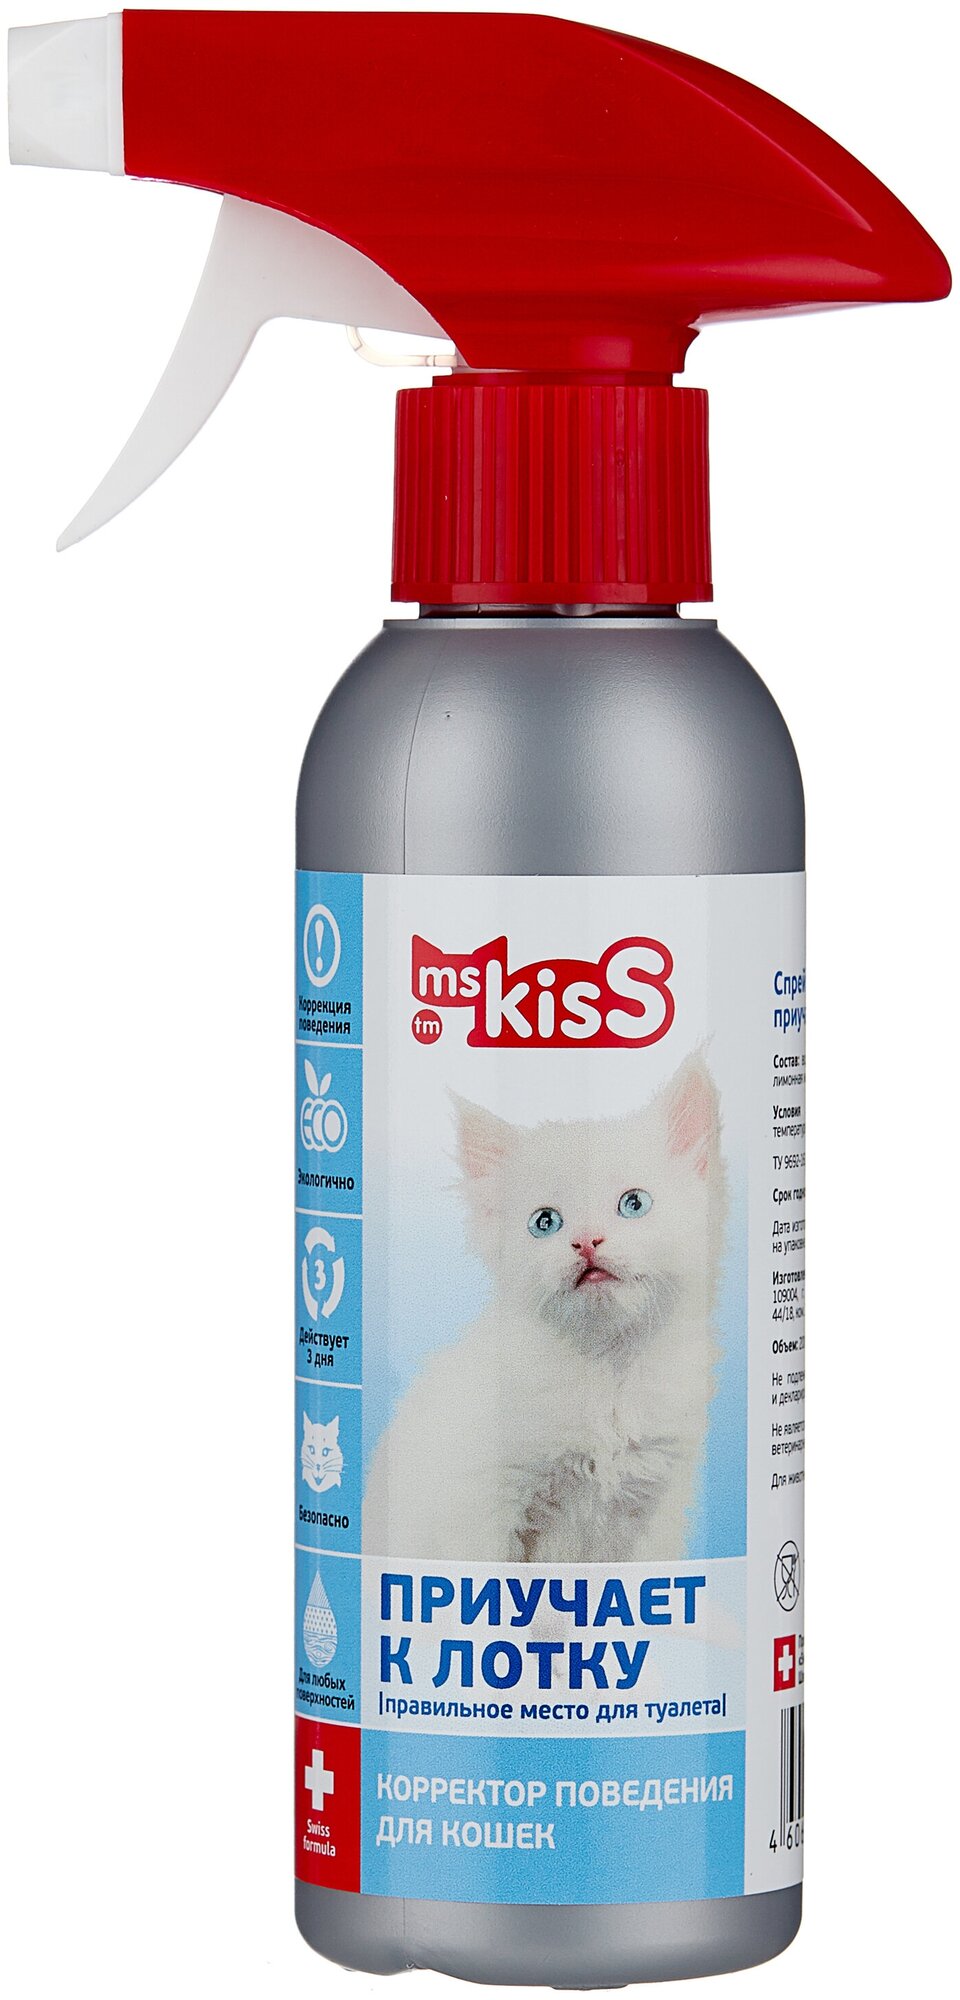 Спрей Ms.Kiss Приучает к лотку, зоогигиенический для кошек, 200 мл — купить  в интернет-магазине по низкой цене на Яндекс Маркете